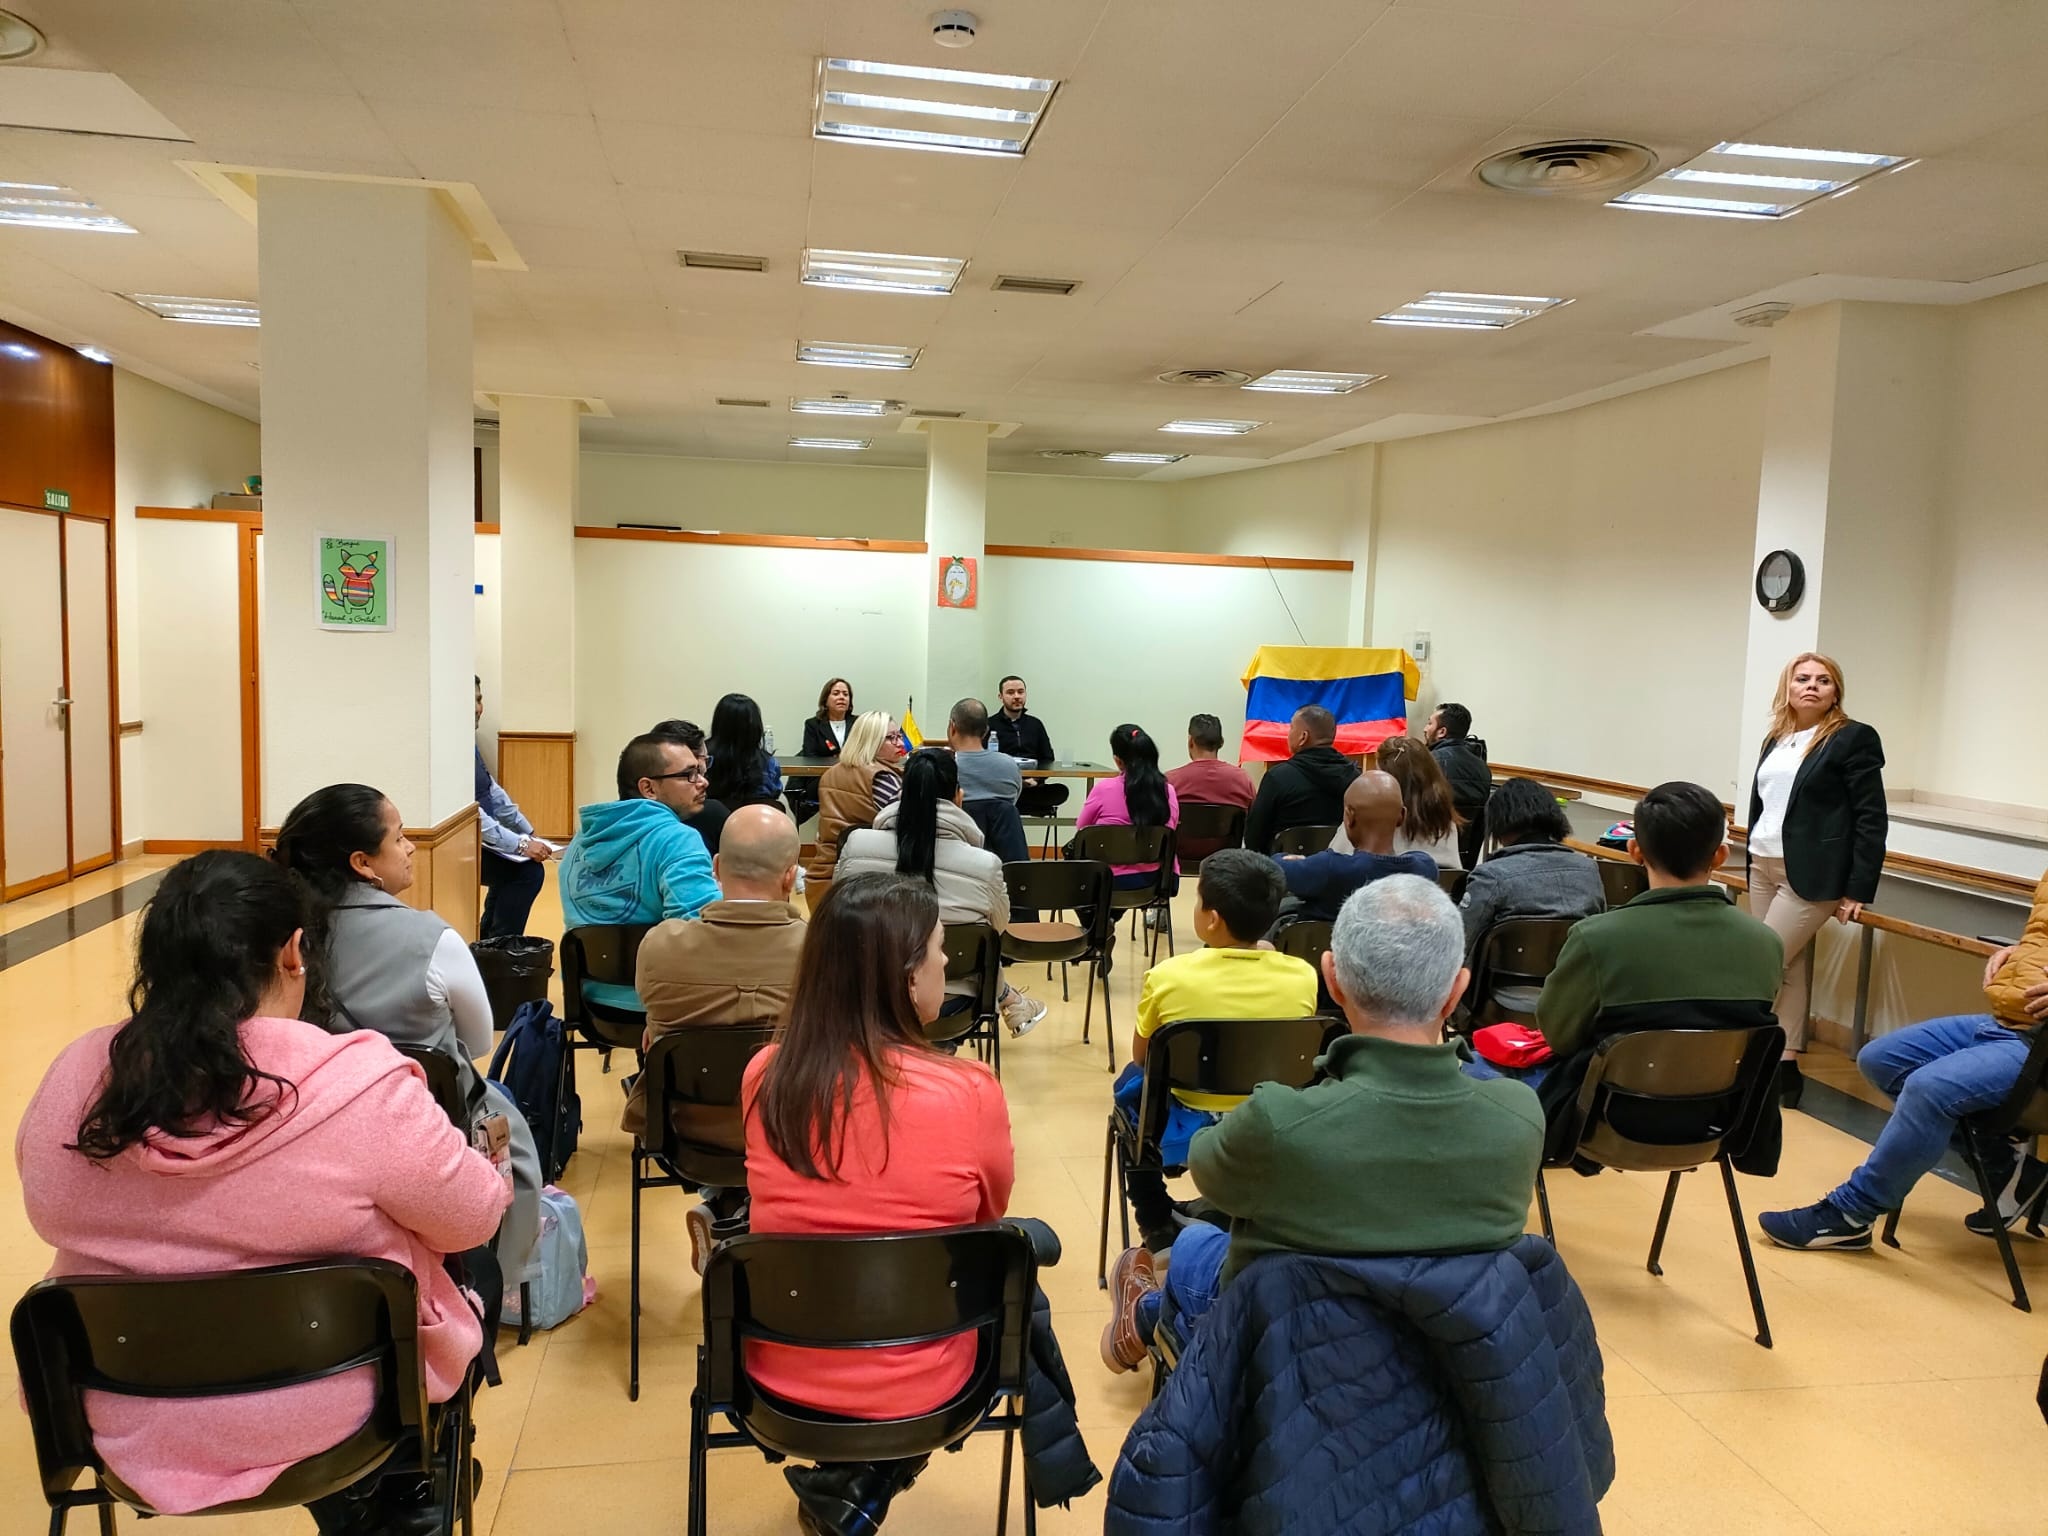 Consulado de Colombia en Bilbao realizó encuentro comunitario en el Principado de Asturias, en la ciudad de Oviedo